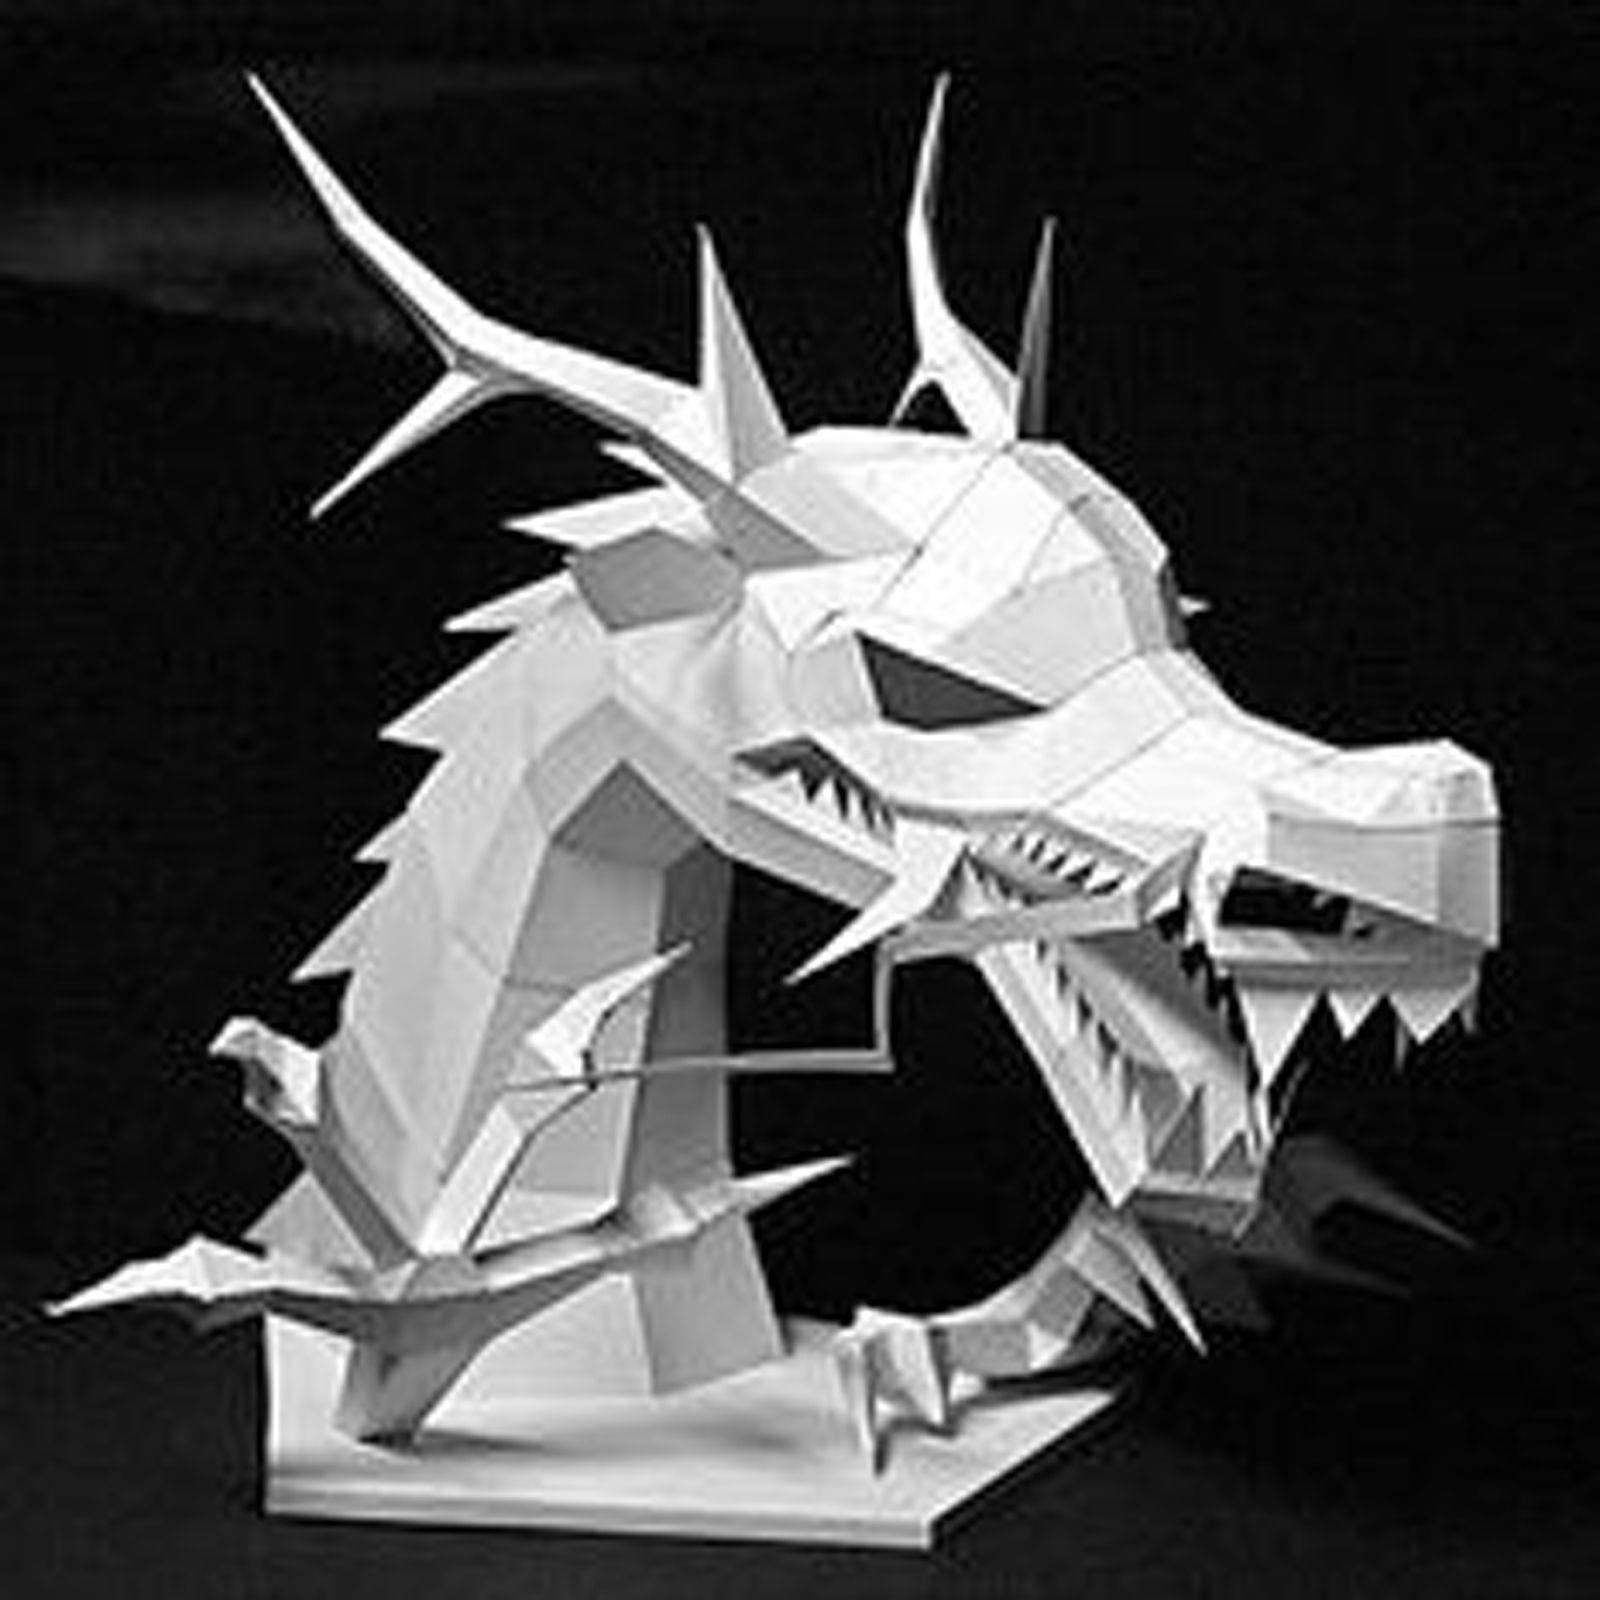 9b41fef69628a3b26460f49a5dc6eb32--dragon-head-paper-models.jpg